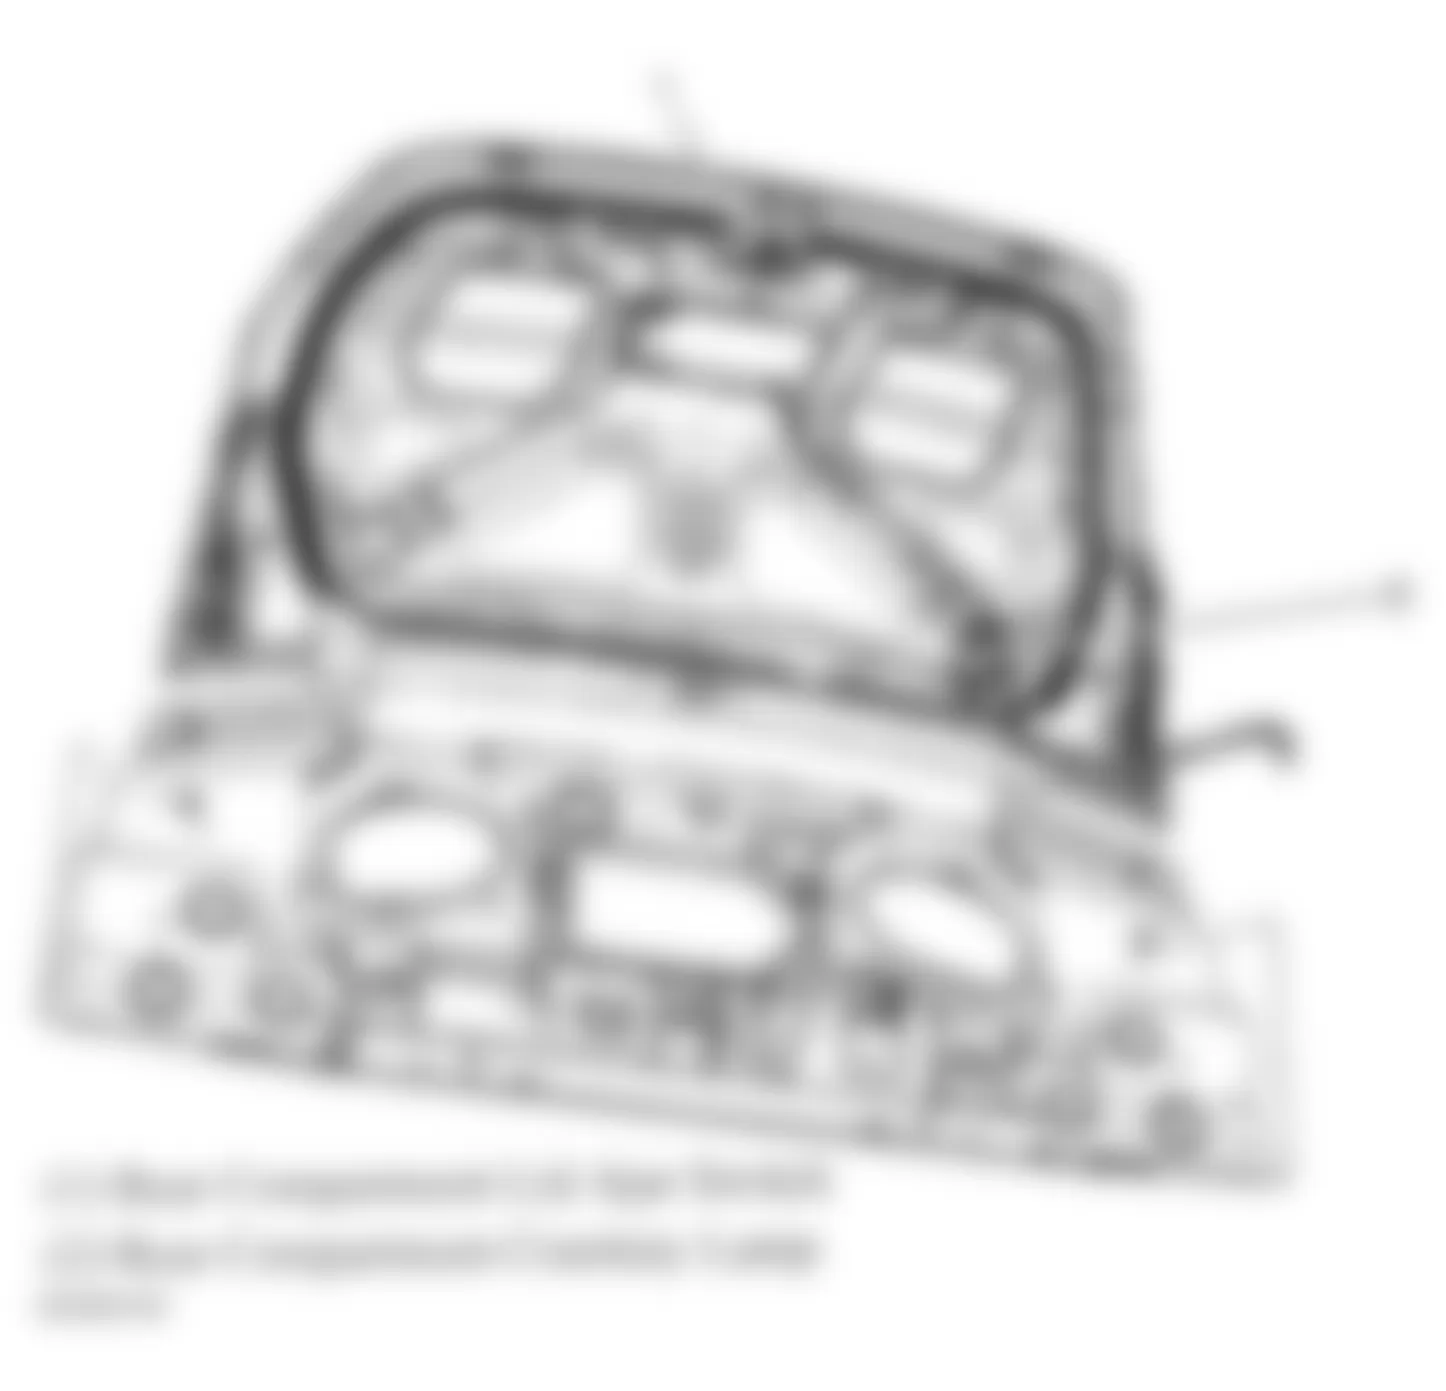 Buick Allure CXL 2005 - Component Locations -  Trunk Lid